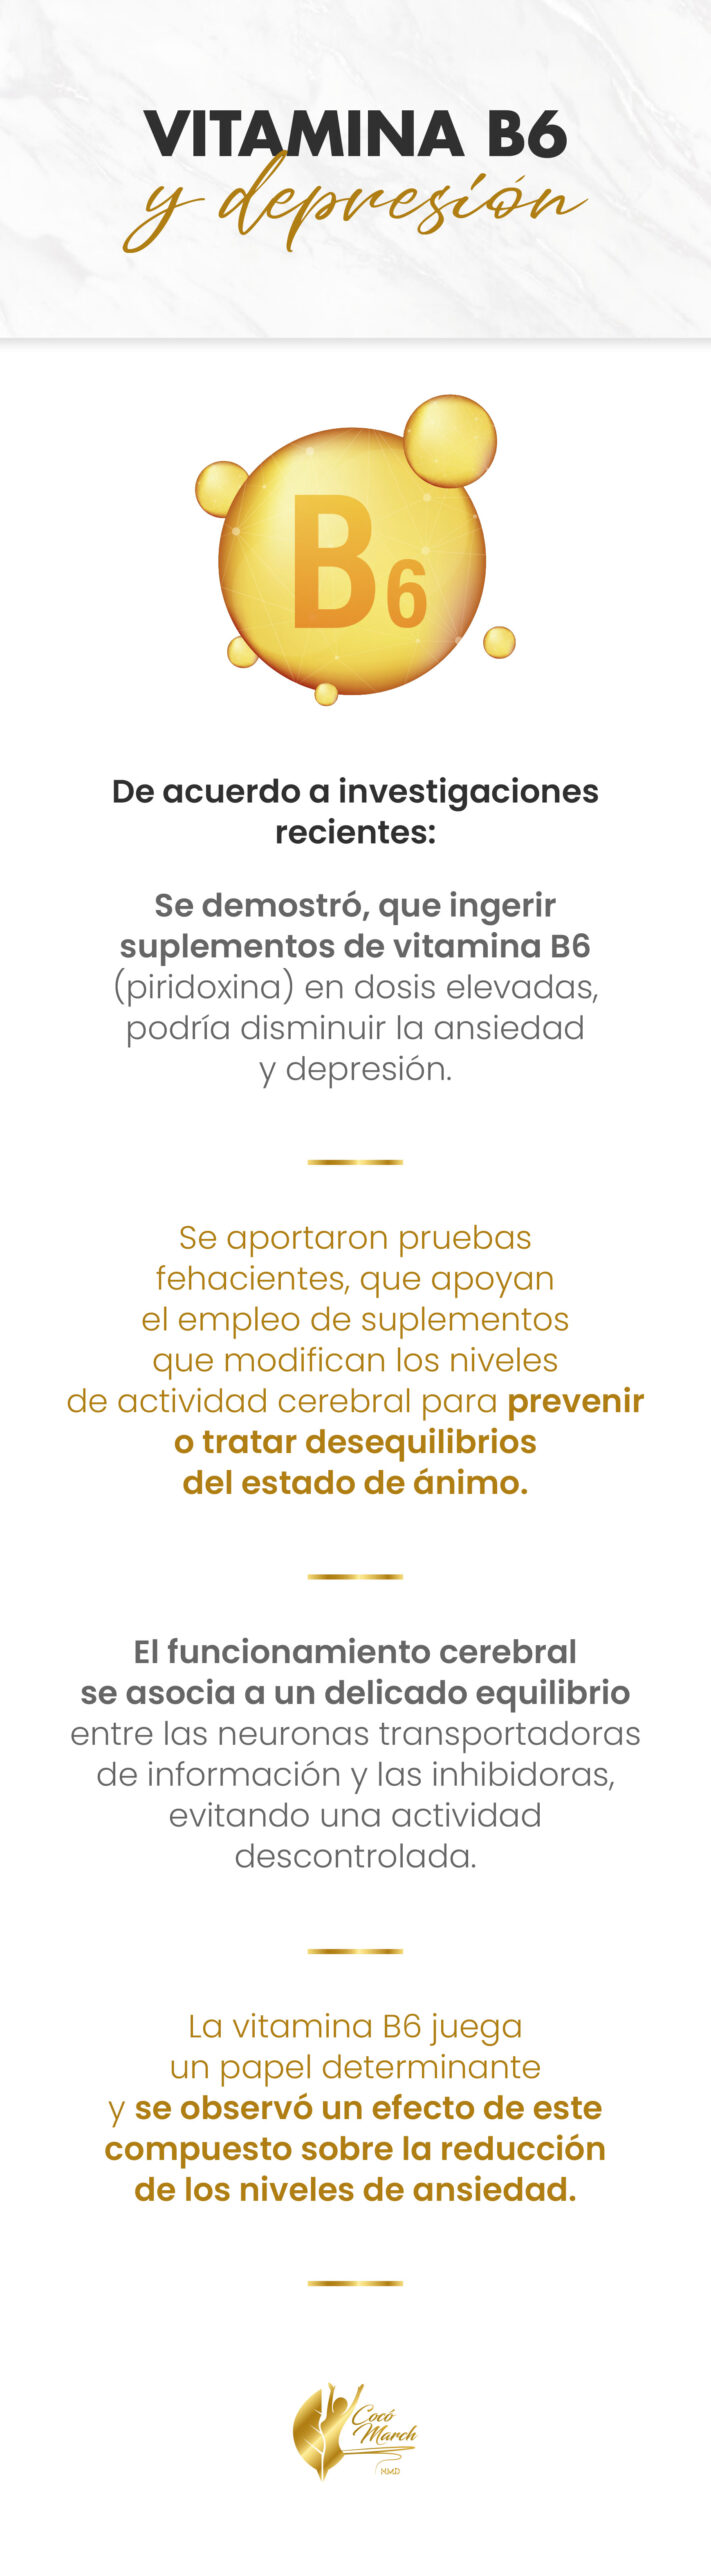 Vitamina B6 y depresión